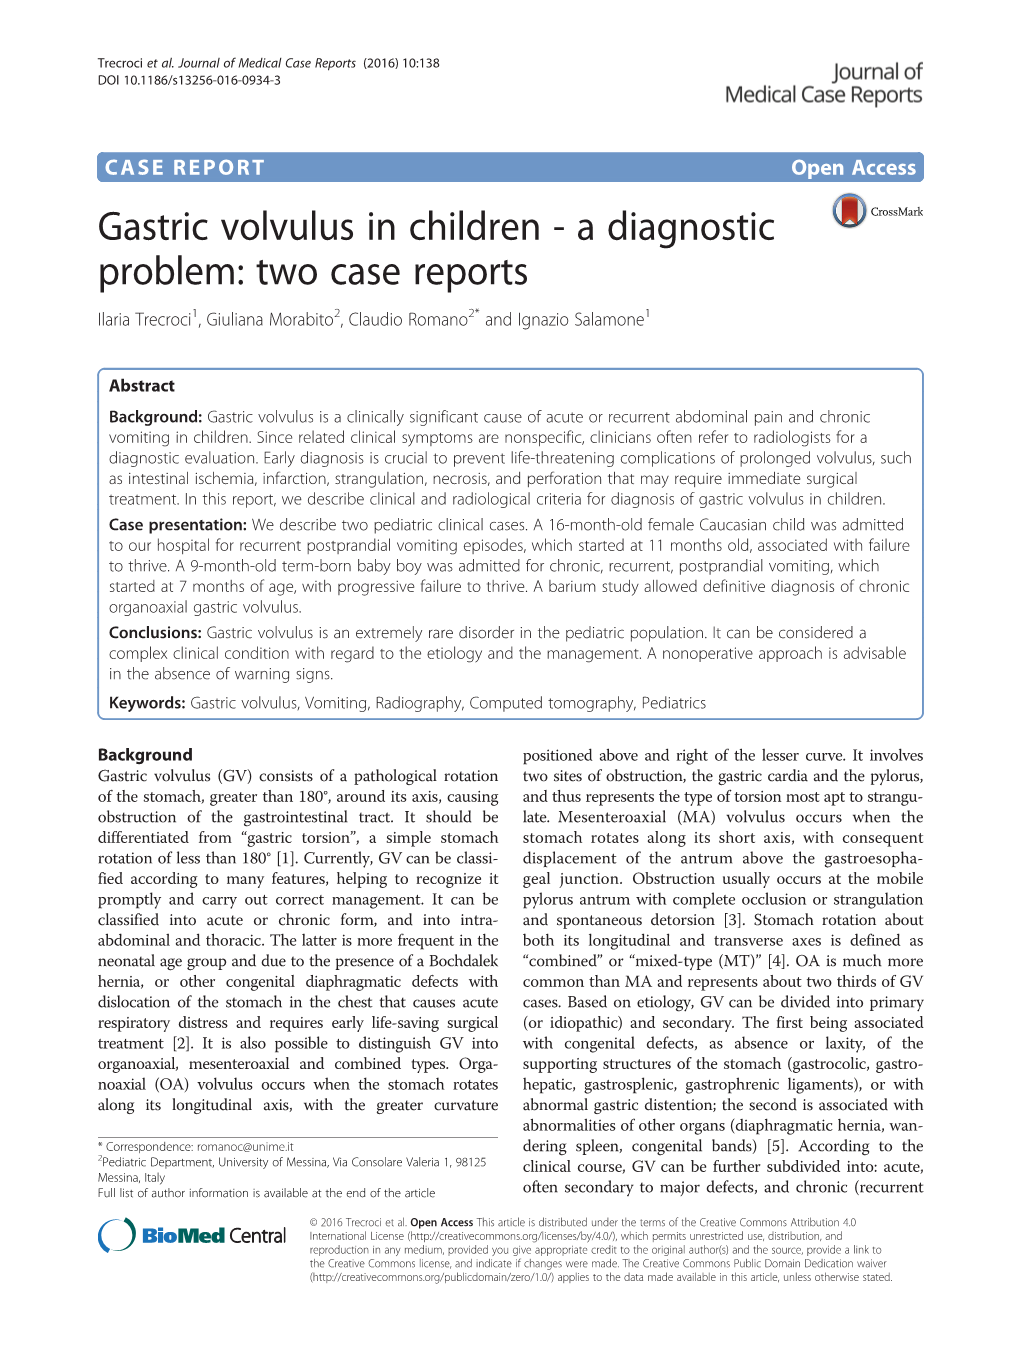 Gastric Volvulus in Children - a Diagnostic Problem: Two Case Reports Ilaria Trecroci1, Giuliana Morabito2, Claudio Romano2* and Ignazio Salamone1